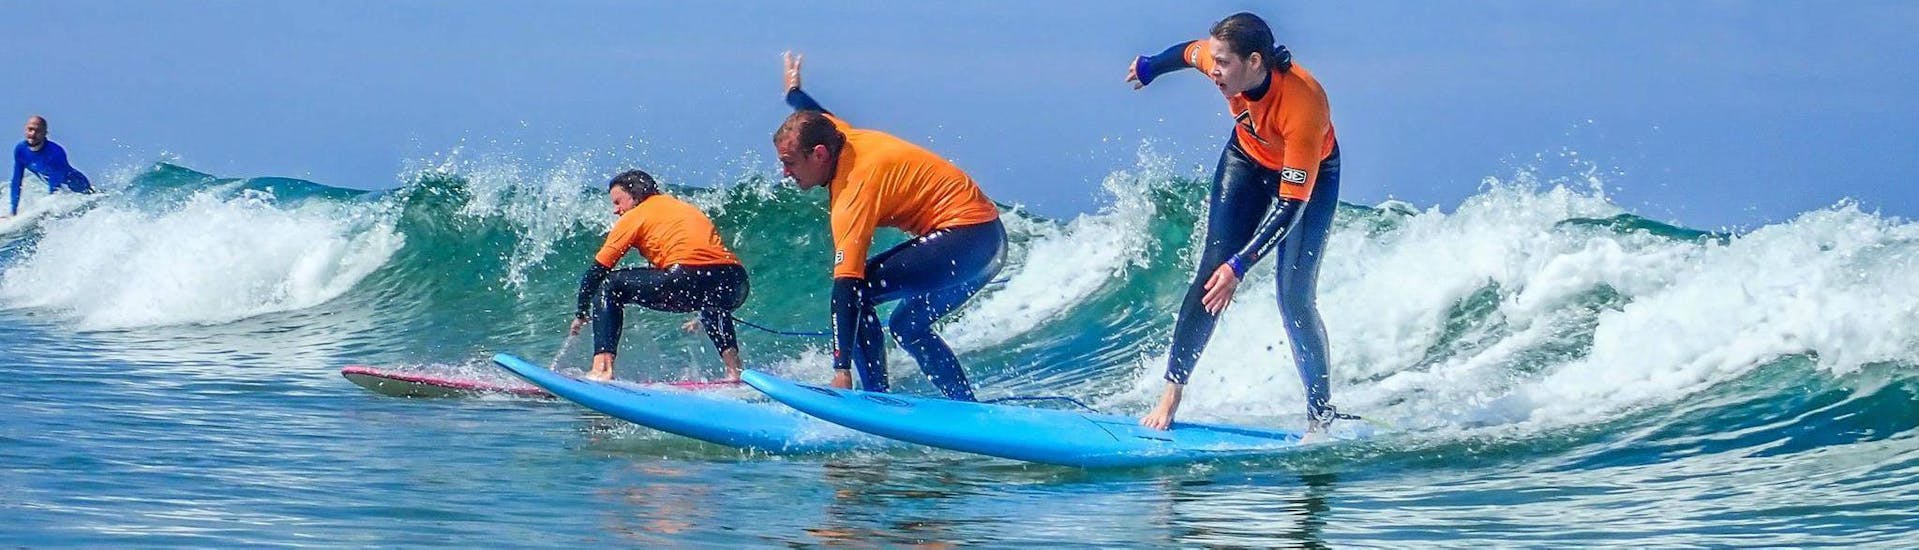 Curso de Surf en Esmoriz a partir de 12 años para principiantes.